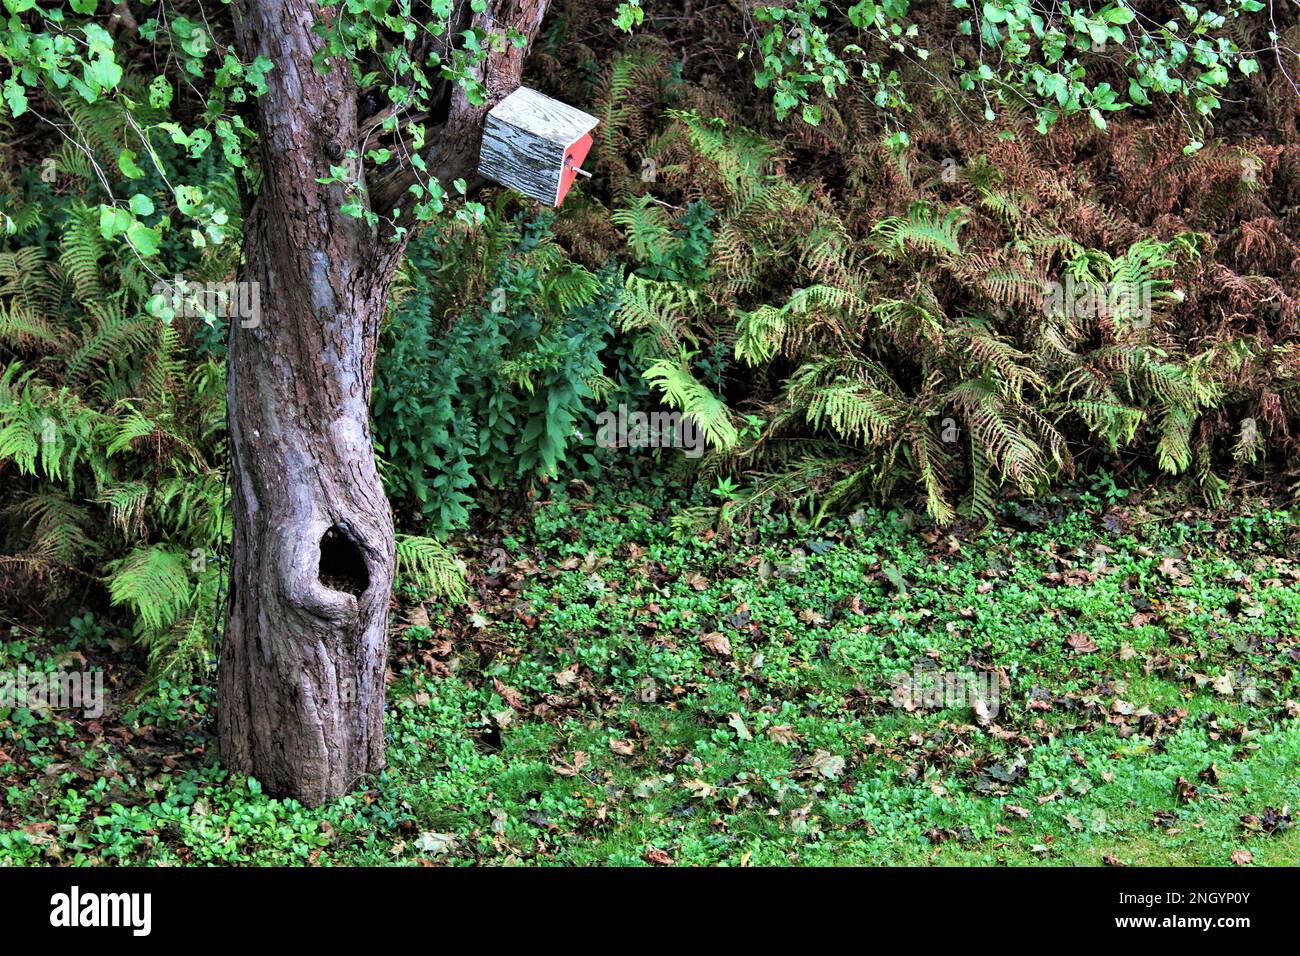 Vecchio albero con il halow dell'albero e la casa dell'uccello rosso askew dell'annata in un cortile verde verdeggiante che mostra i primi segni di caduta. Giorni del cane di vendemmia estiva Foto Stock